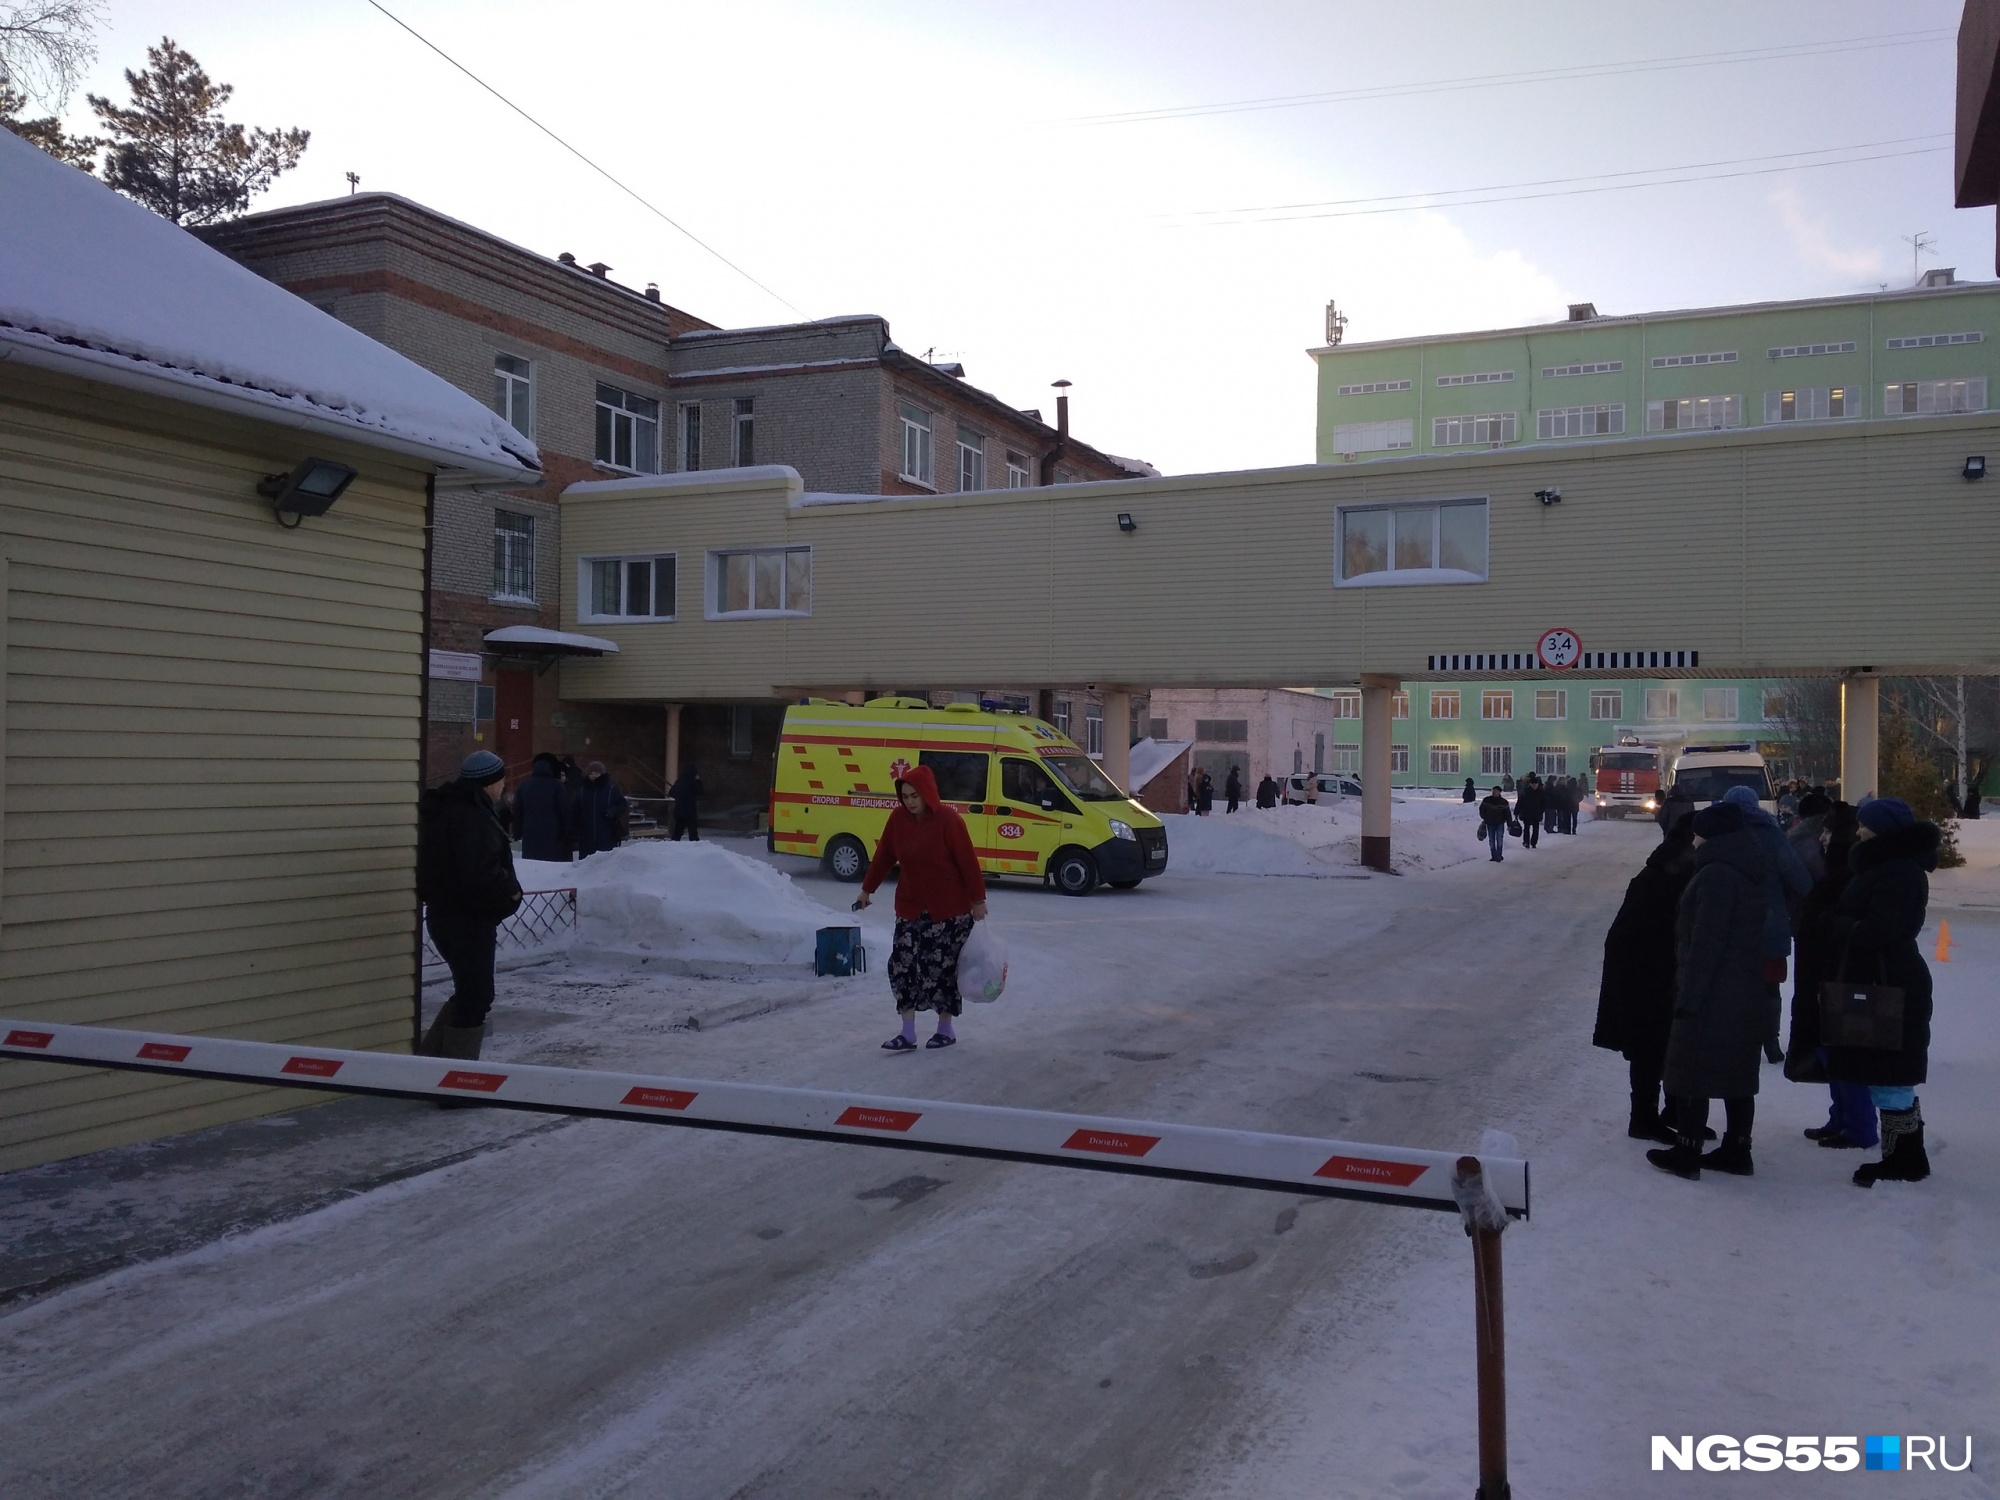 Приходите завтра: омские эвакуации на примере одной больницы